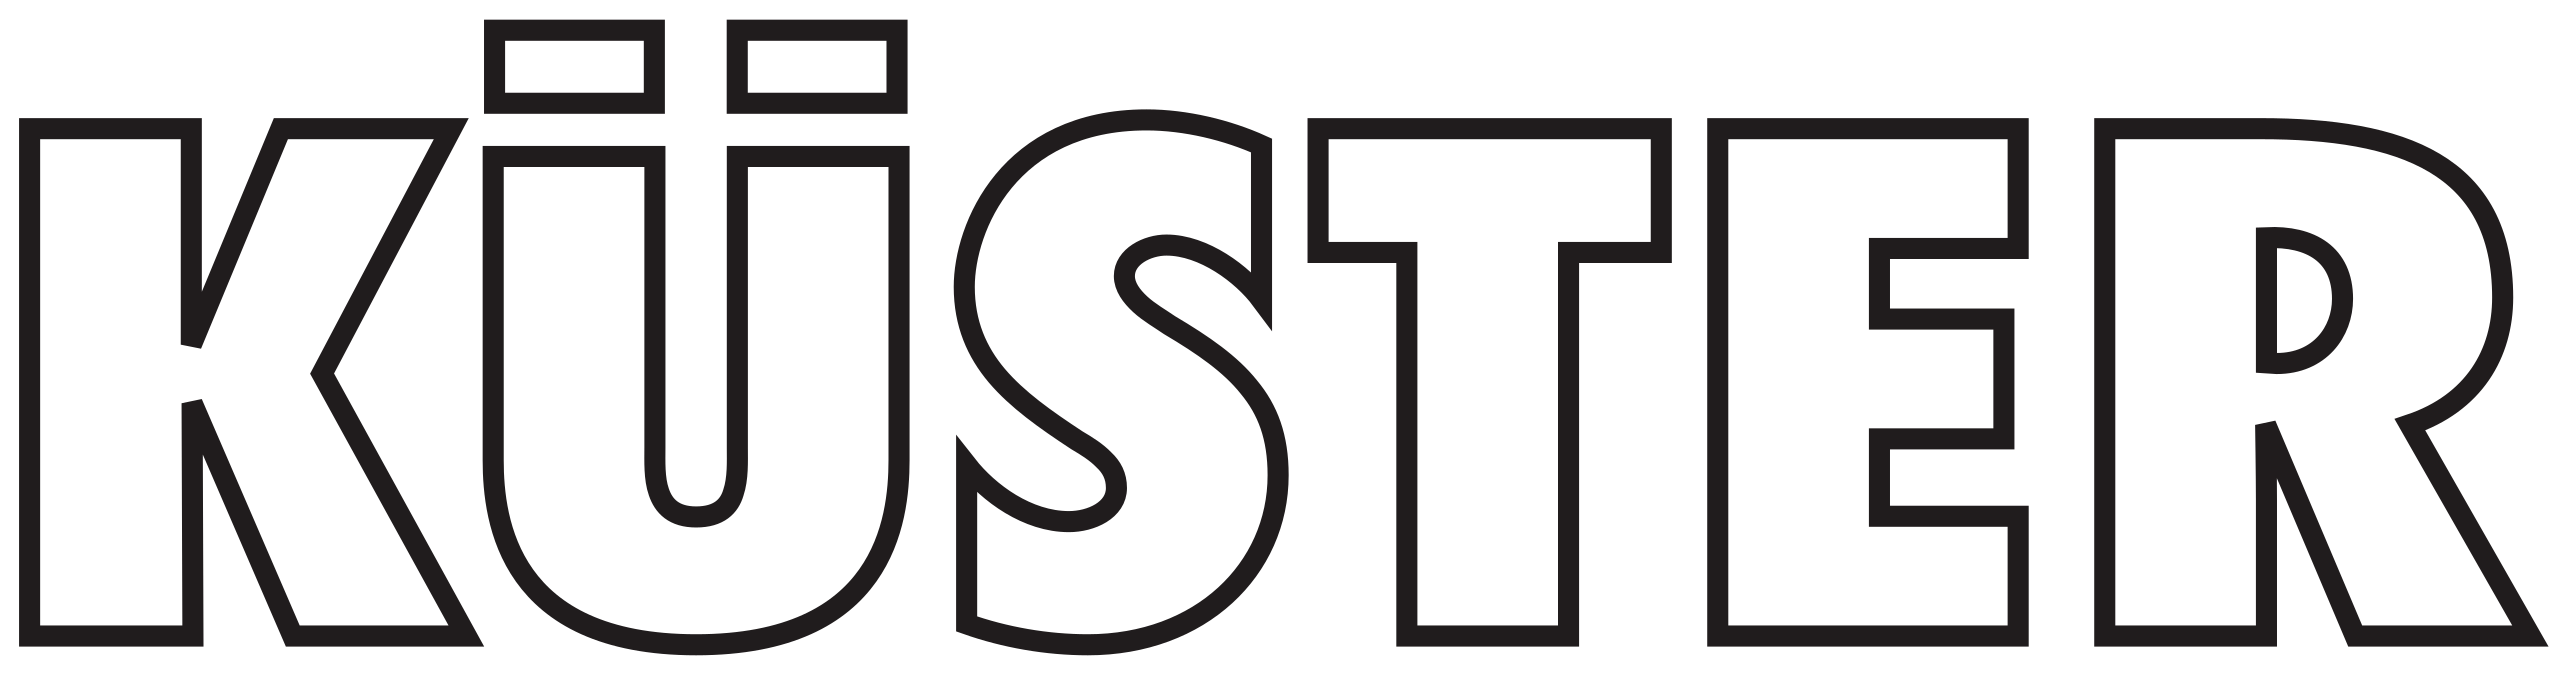 2560px-Küster_(Unternehmen)_logo.svg